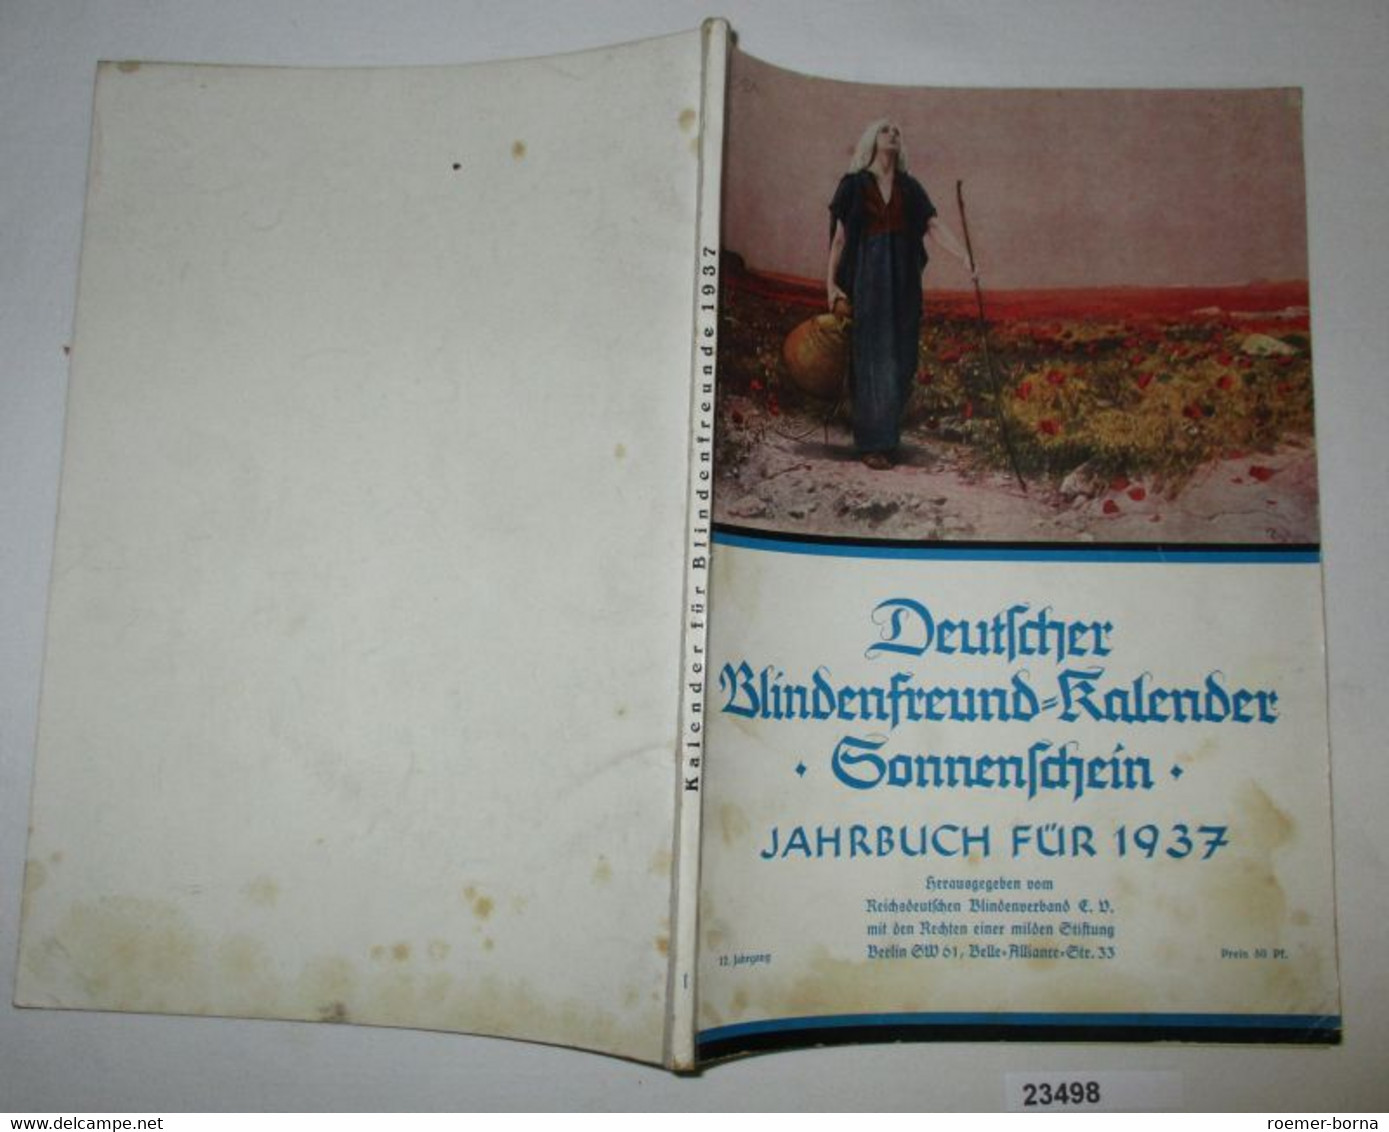 Deutscher Blindenfreund-Kalender "Sonnenschein" Jahrbuch Für 1937 - Calendars